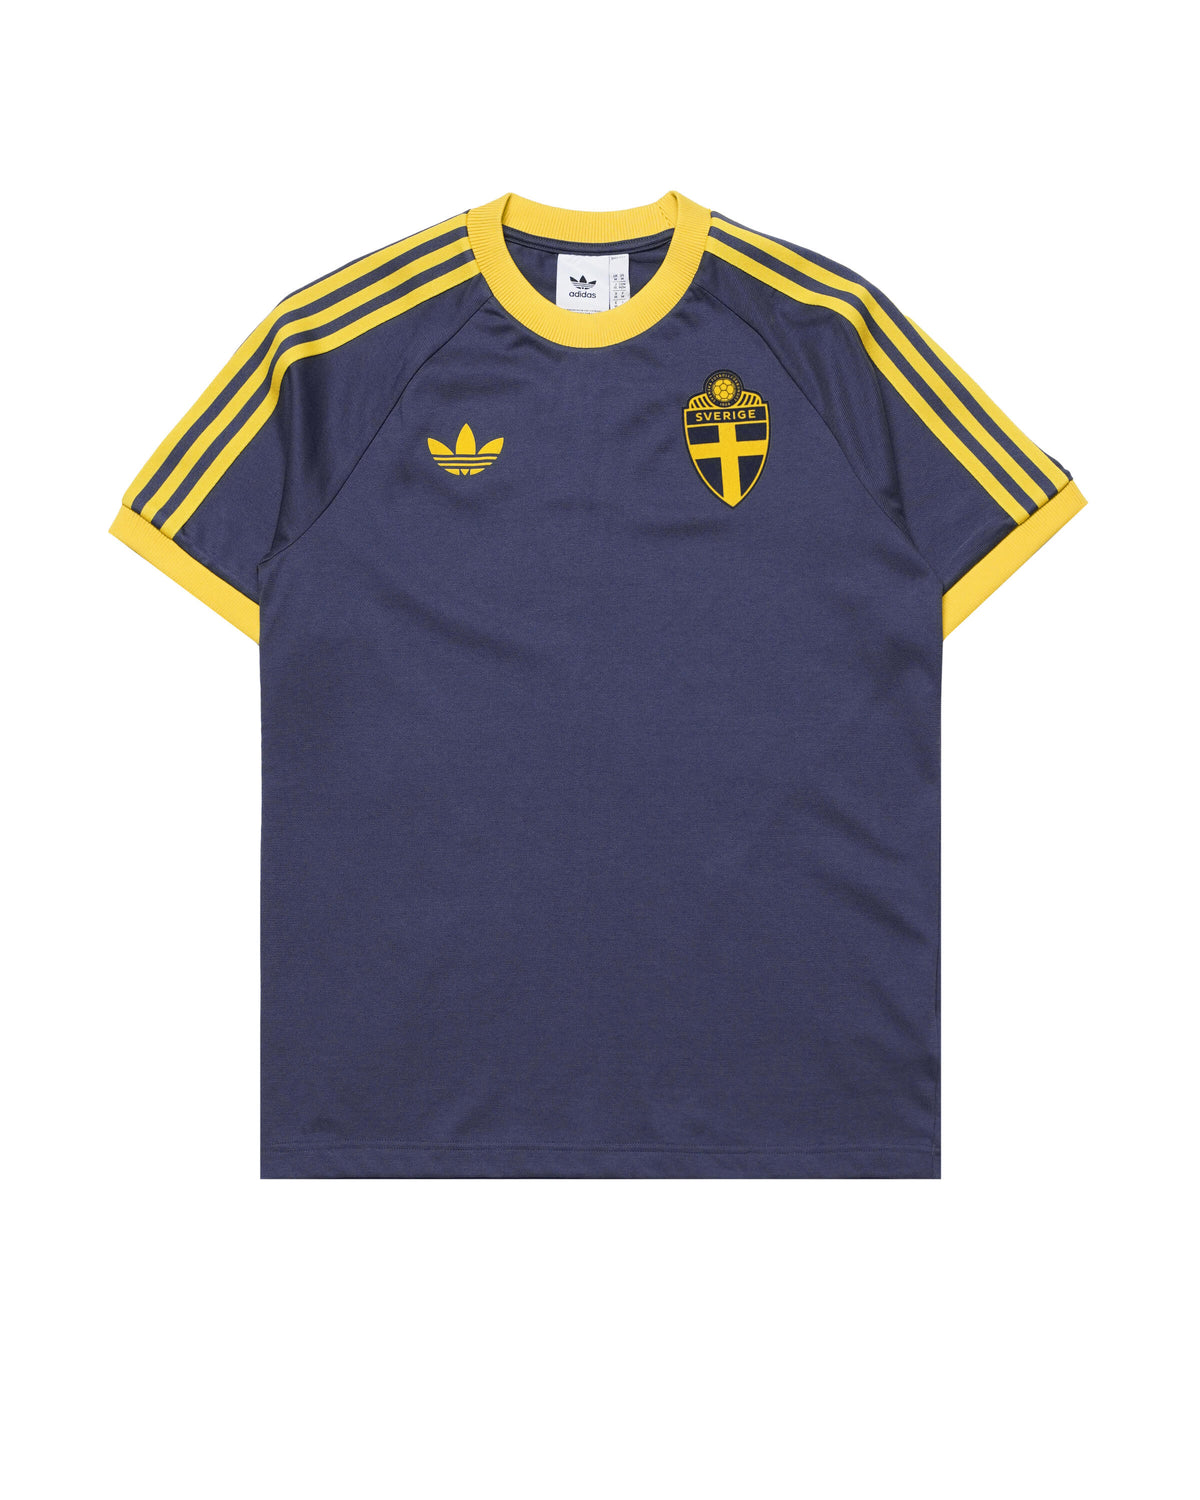 Adidas Originals Sweden SVFF OG 3 Stripes TEE